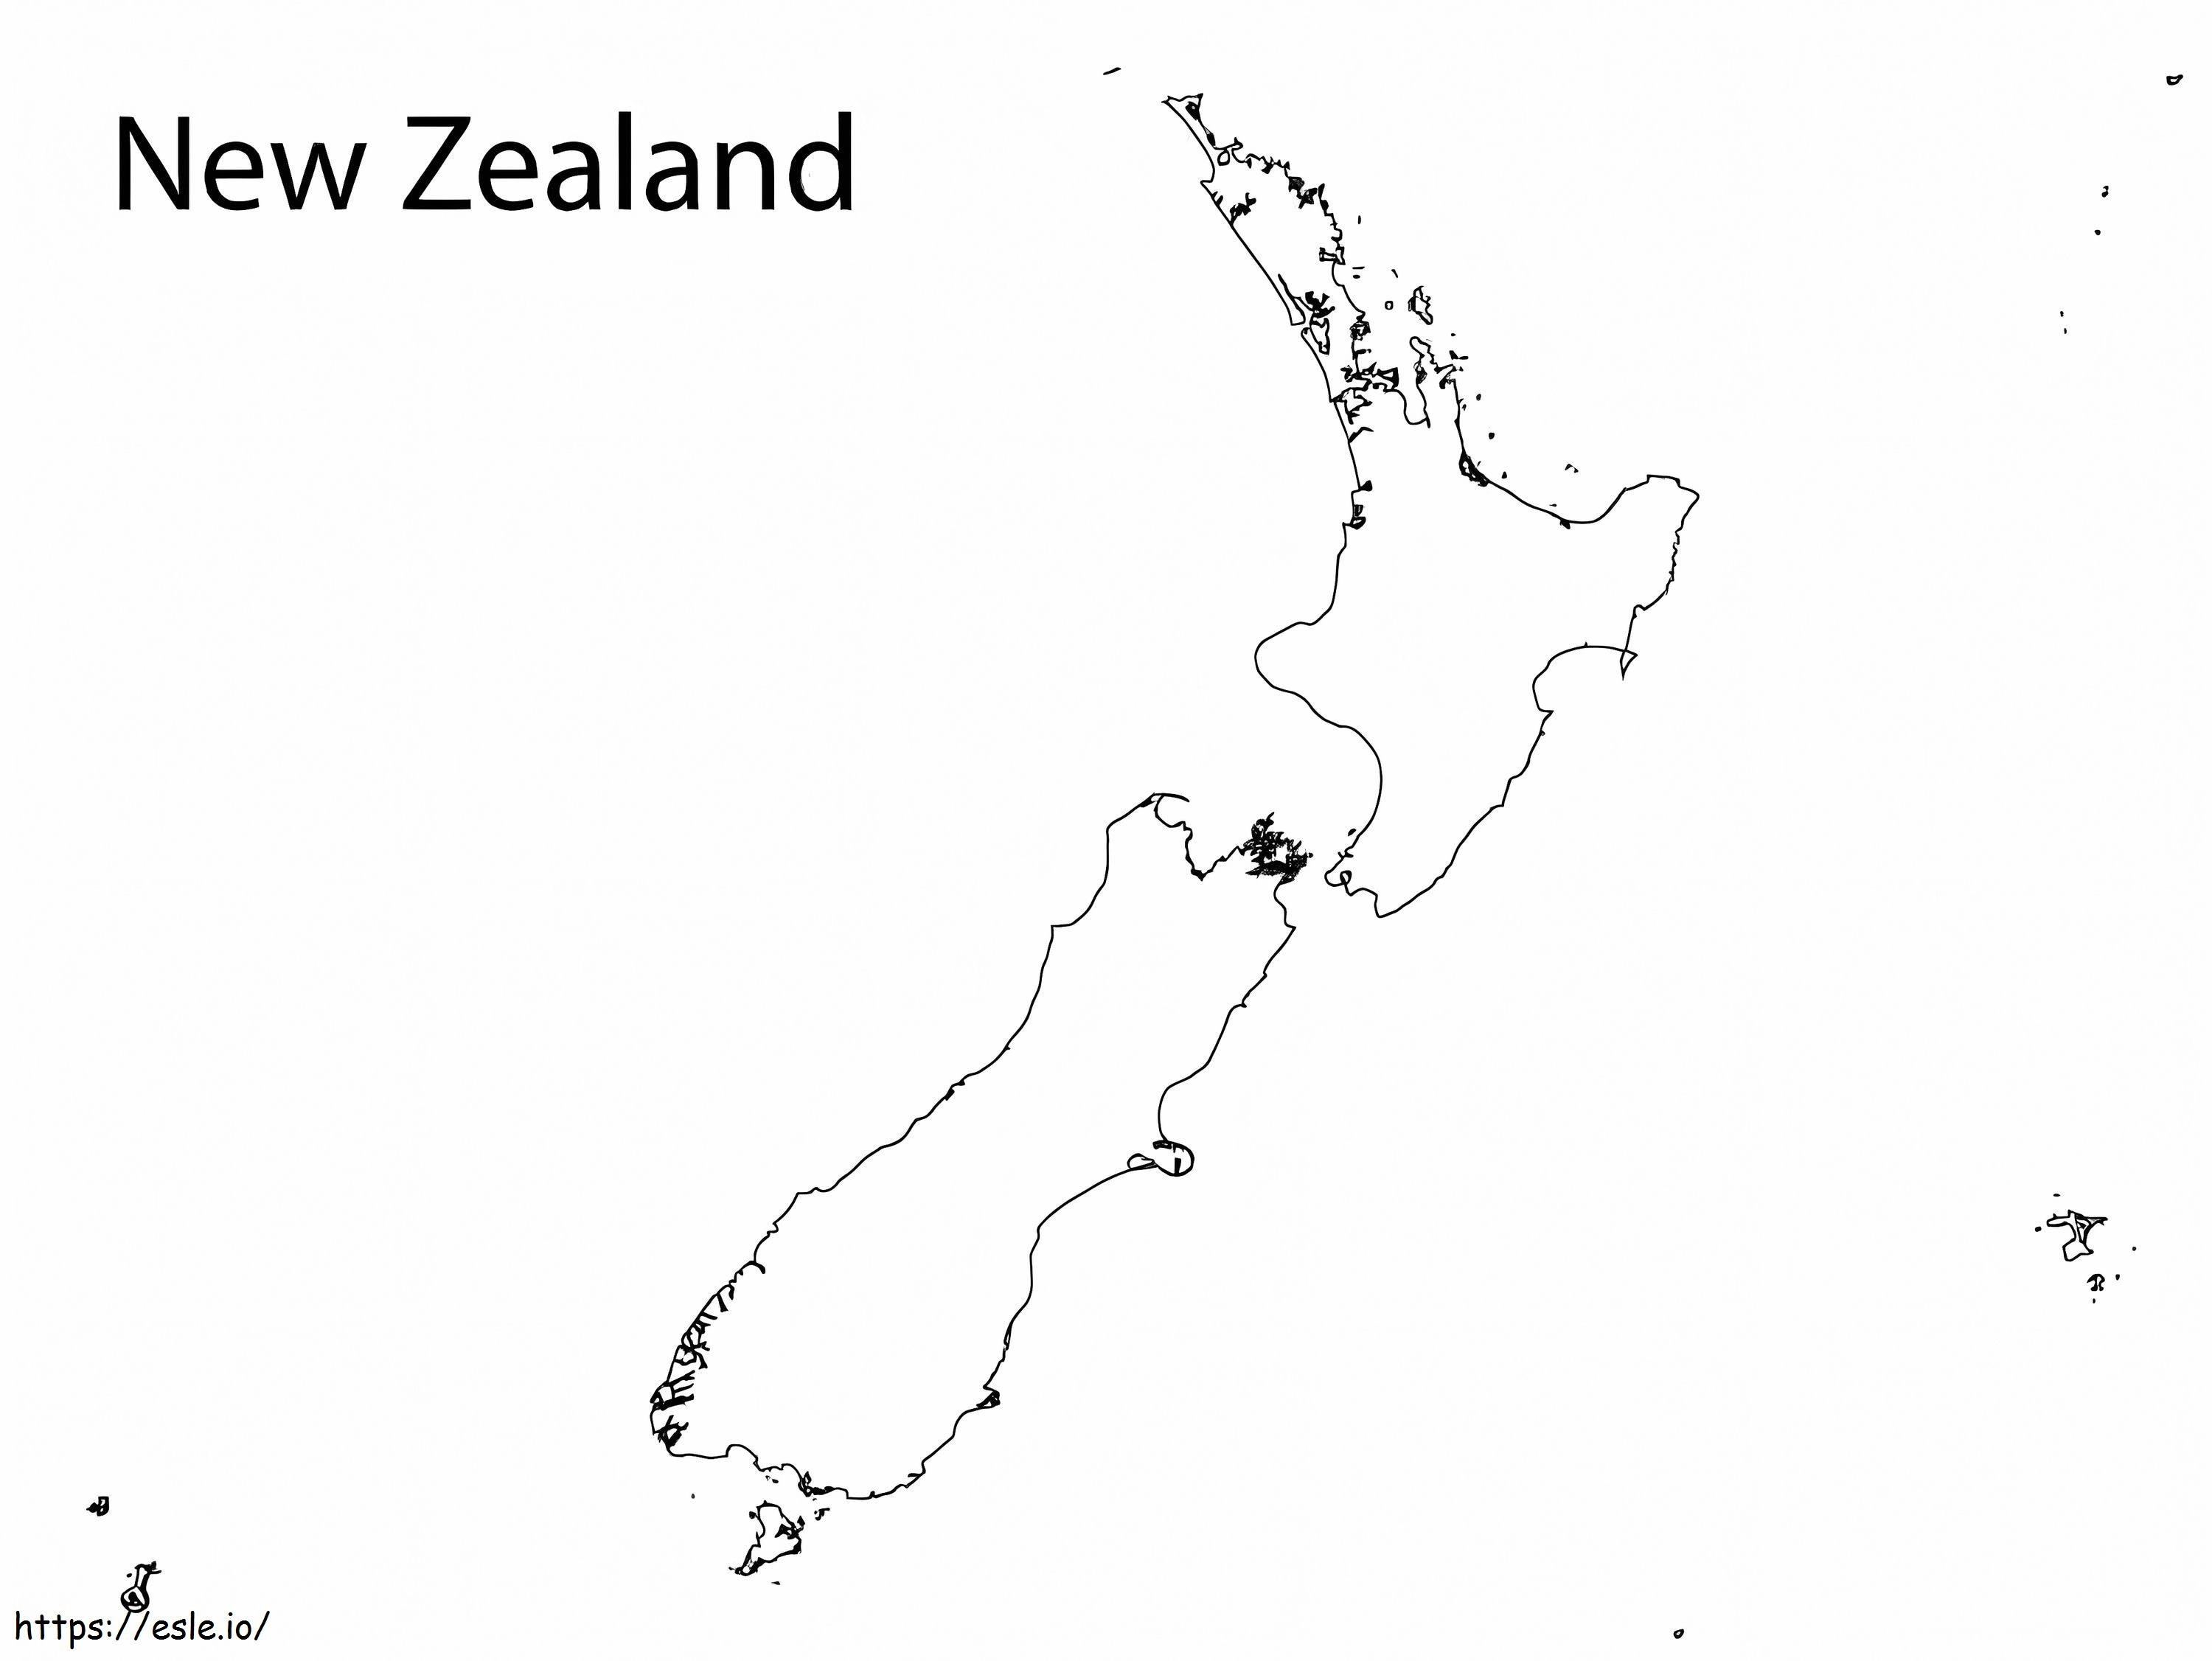 Peta Selandia Baru Gambar Mewarnai